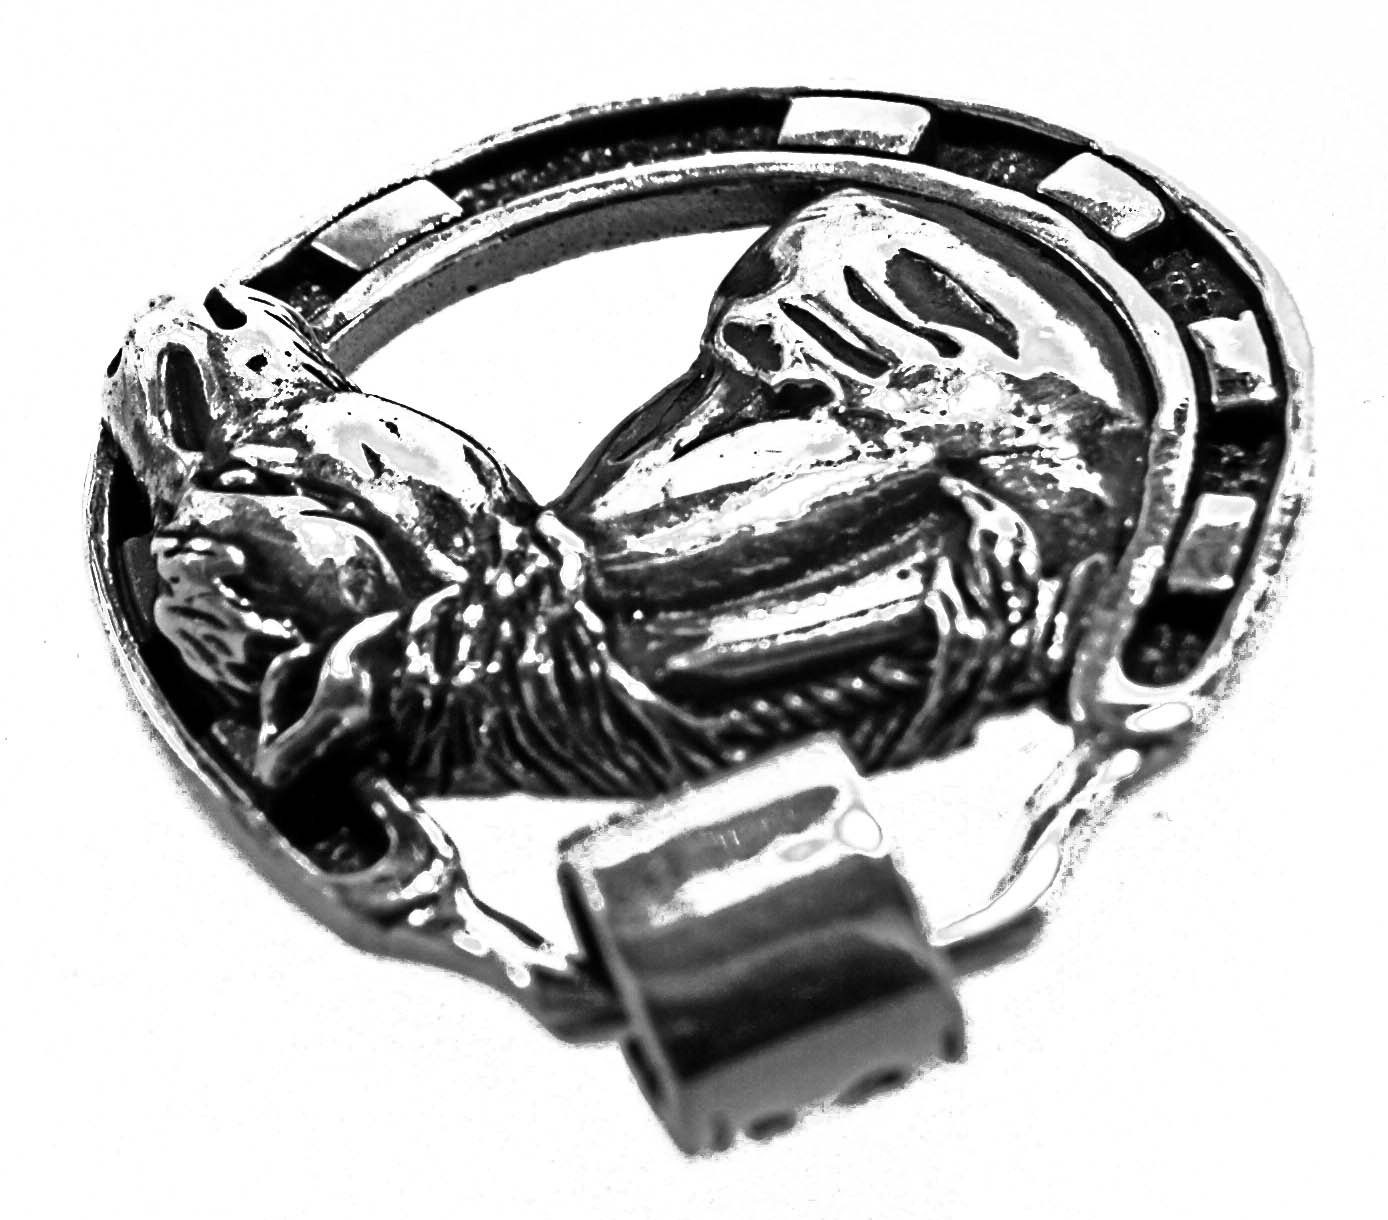 Silber Leather Kiss Anhänger Pferd Pferdanhänger Pferde of Nr. 412 Pferdeanhänger 925 Horse Kettenanhänger